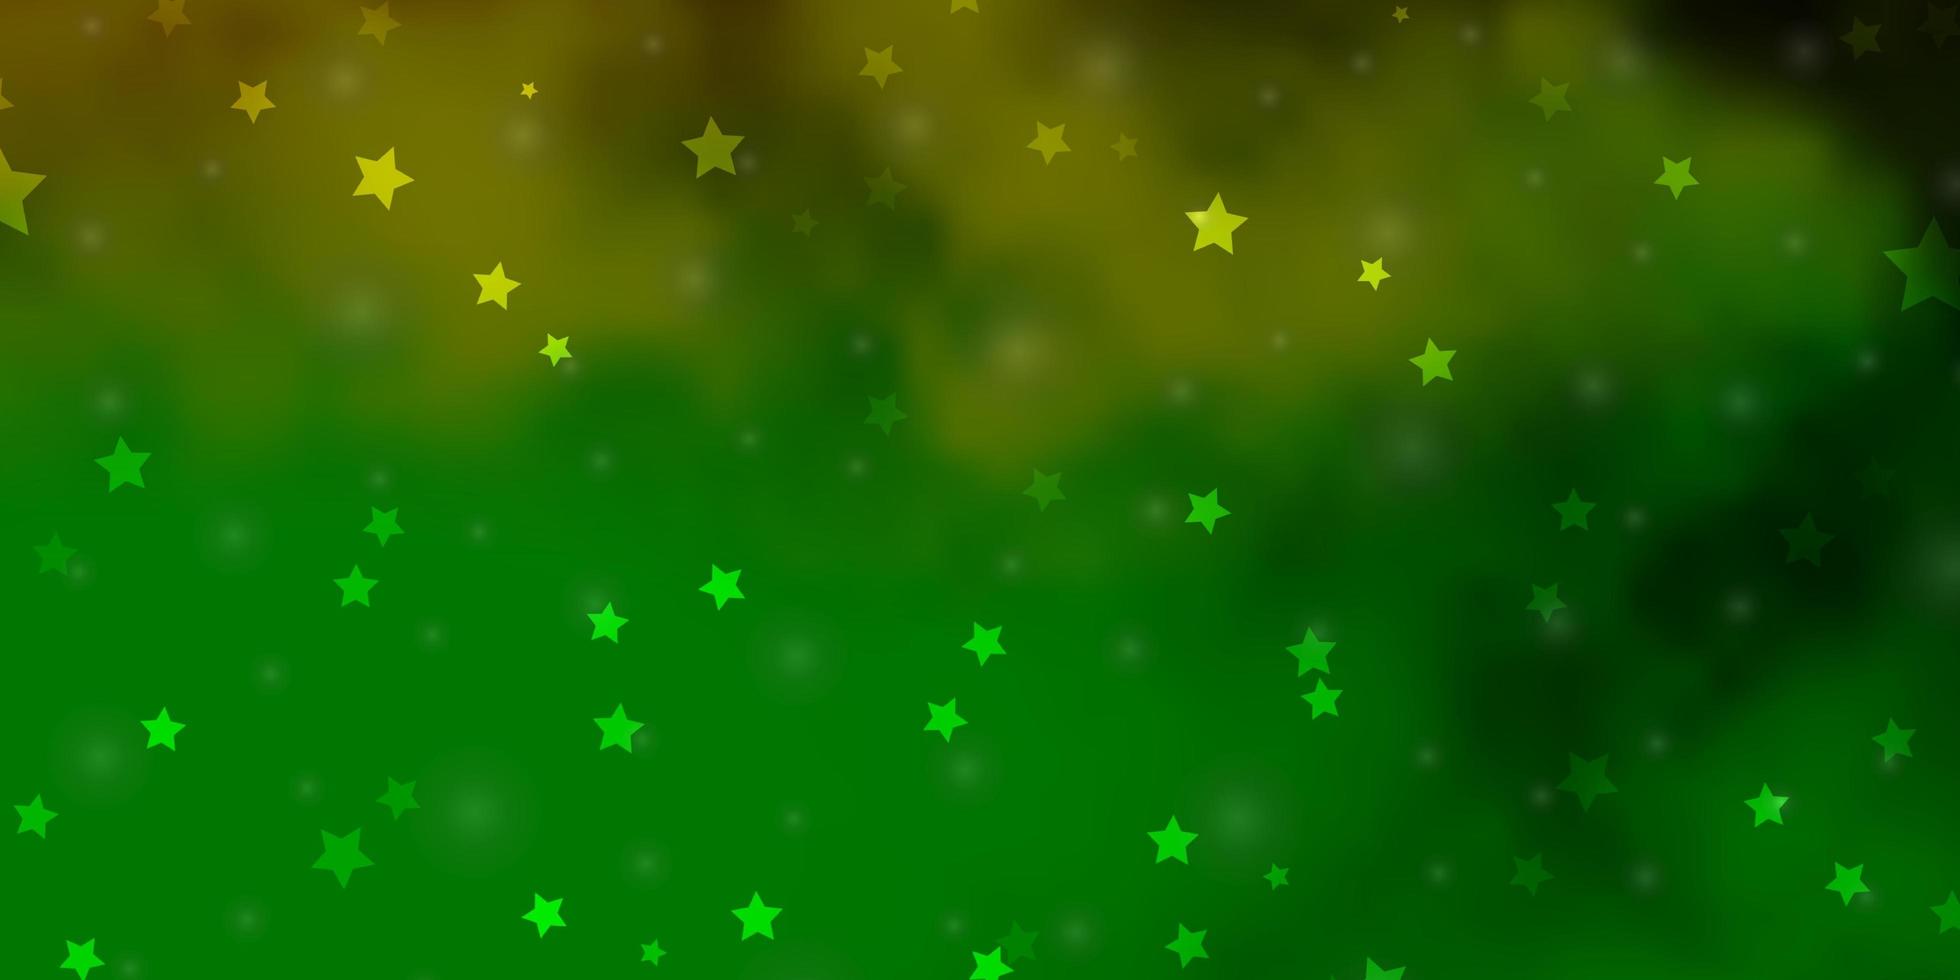 modelo de vetor verde e amarelo claro com estrelas de néon.